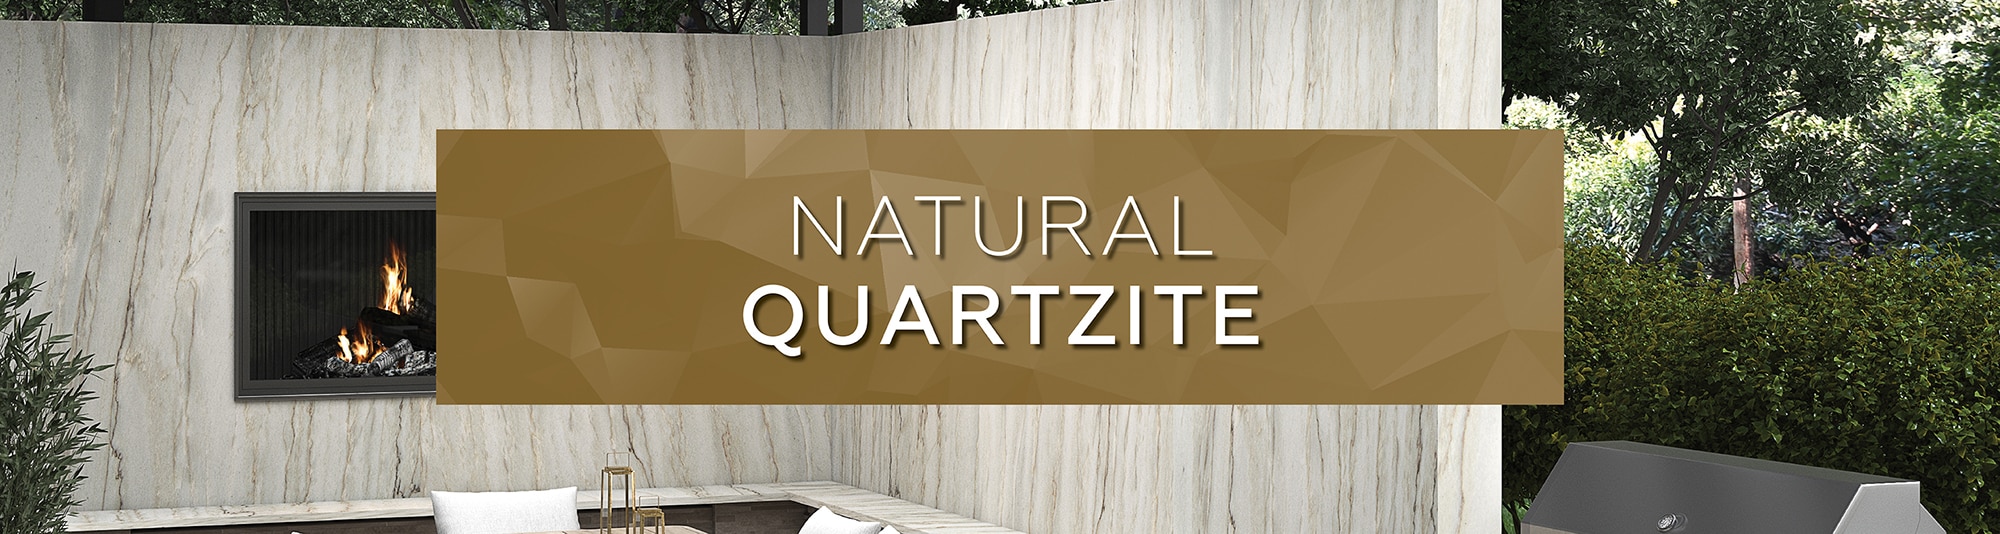 Natural Quartzite